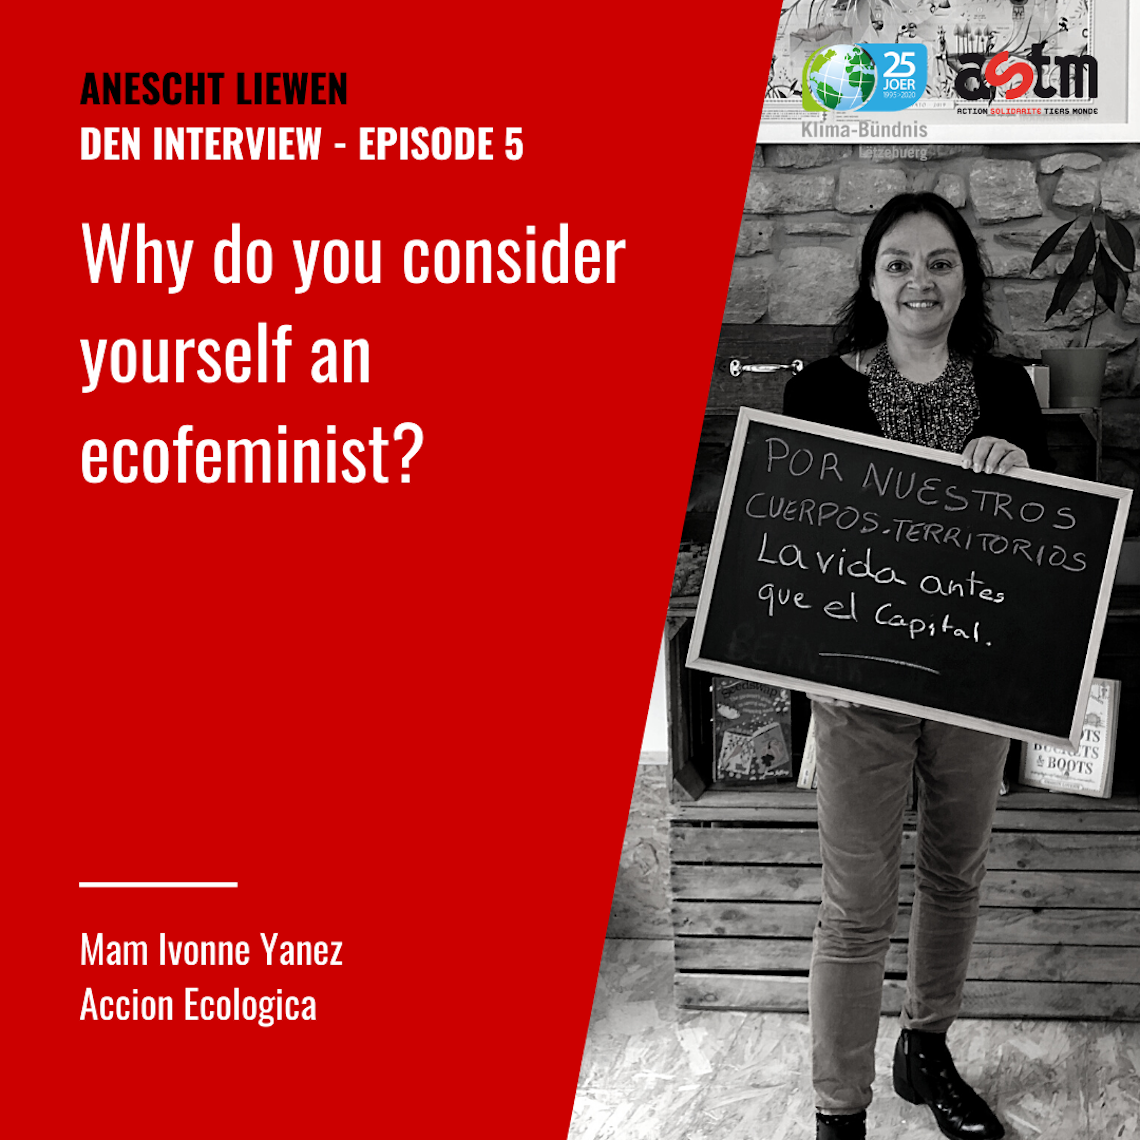 Podcast „Anescht Liewen“: Interview mam Ivonne Yanez vun Acción Ecológica am Ecuador